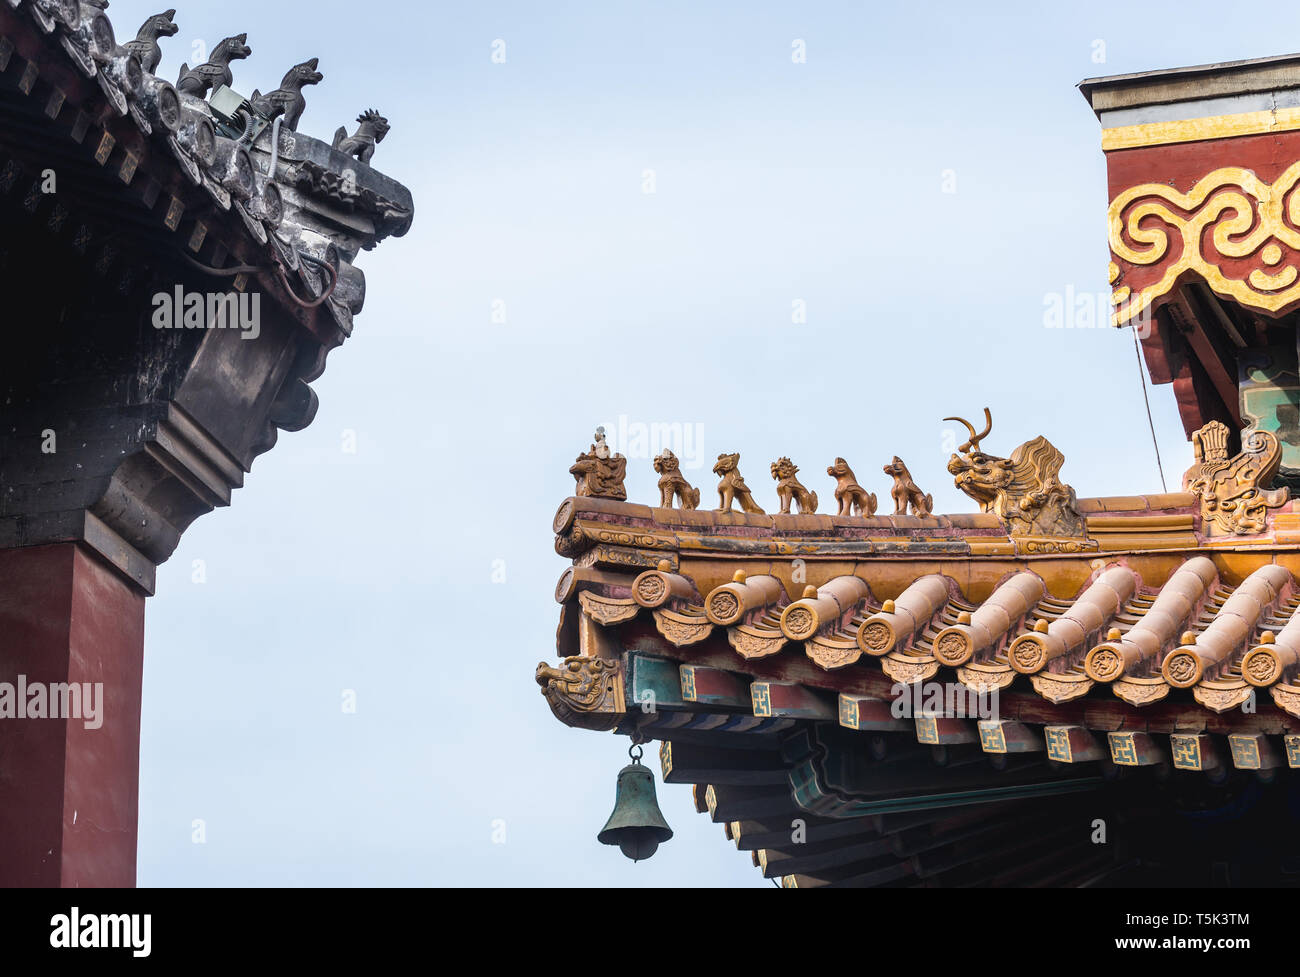 Détails toit aussi appelé temple de Yonghe Temple Lama de l'école Gelug du bouddhisme tibétain dans le district de Dongcheng, Beijing, Chine Banque D'Images